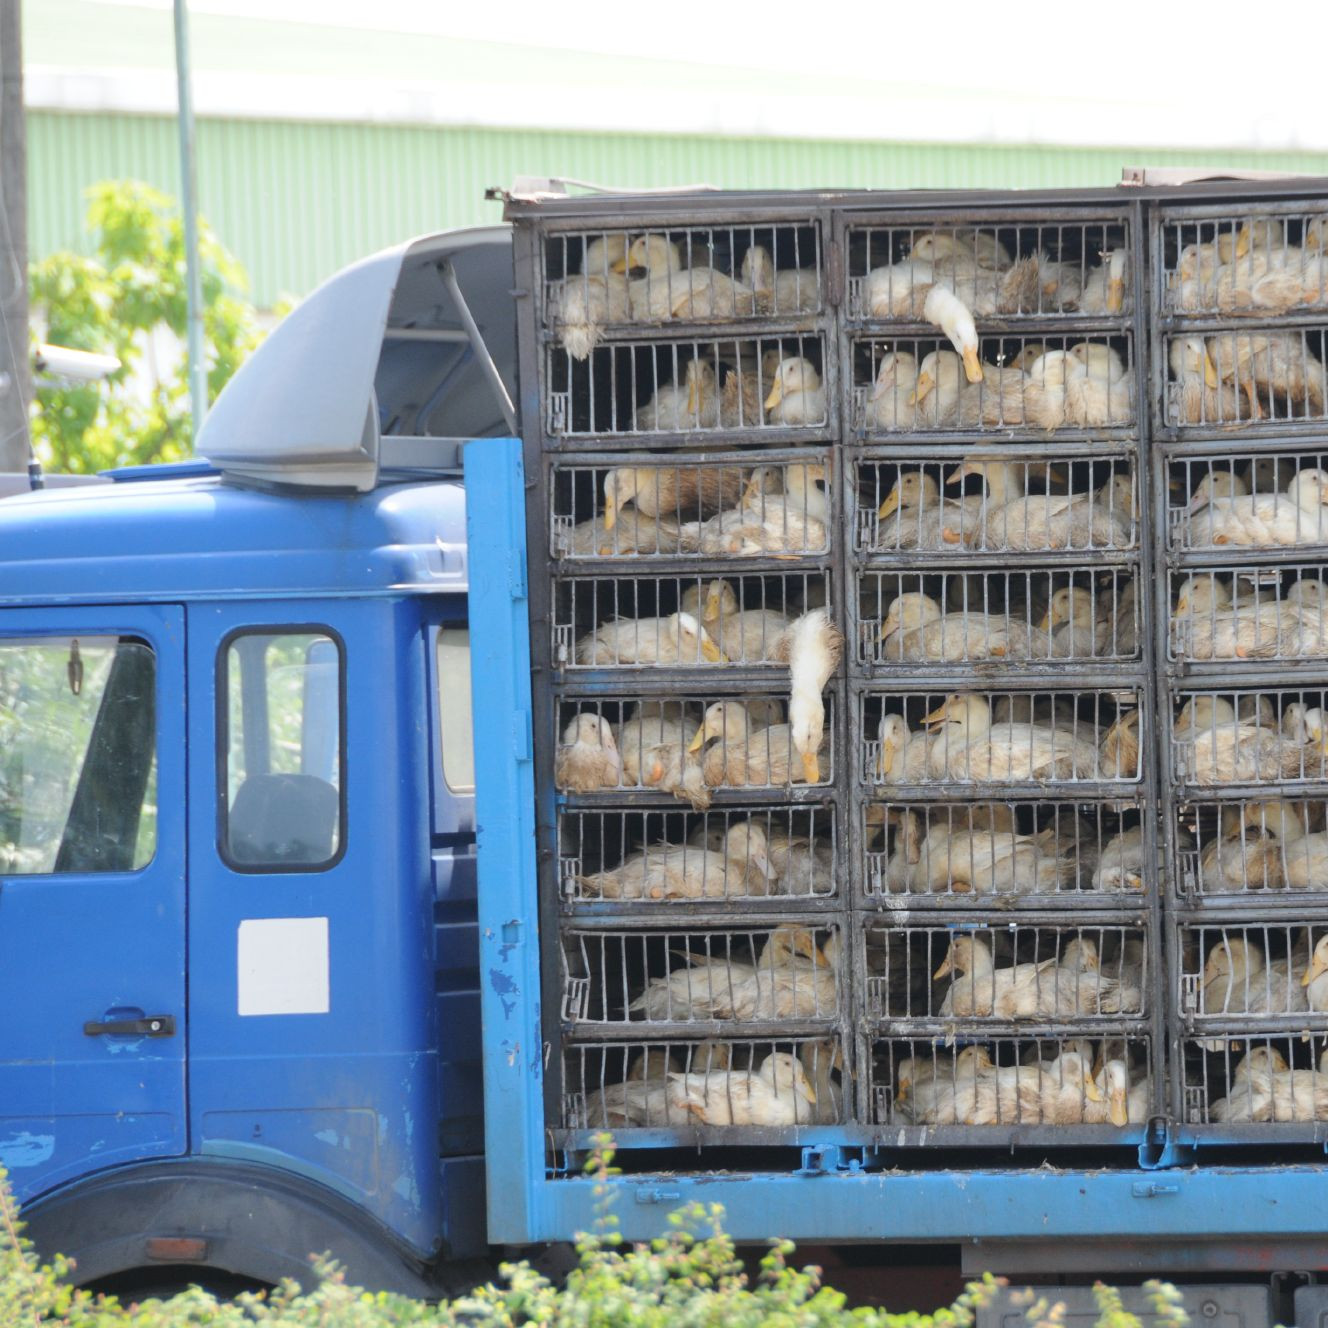 Transport truck full of ducks